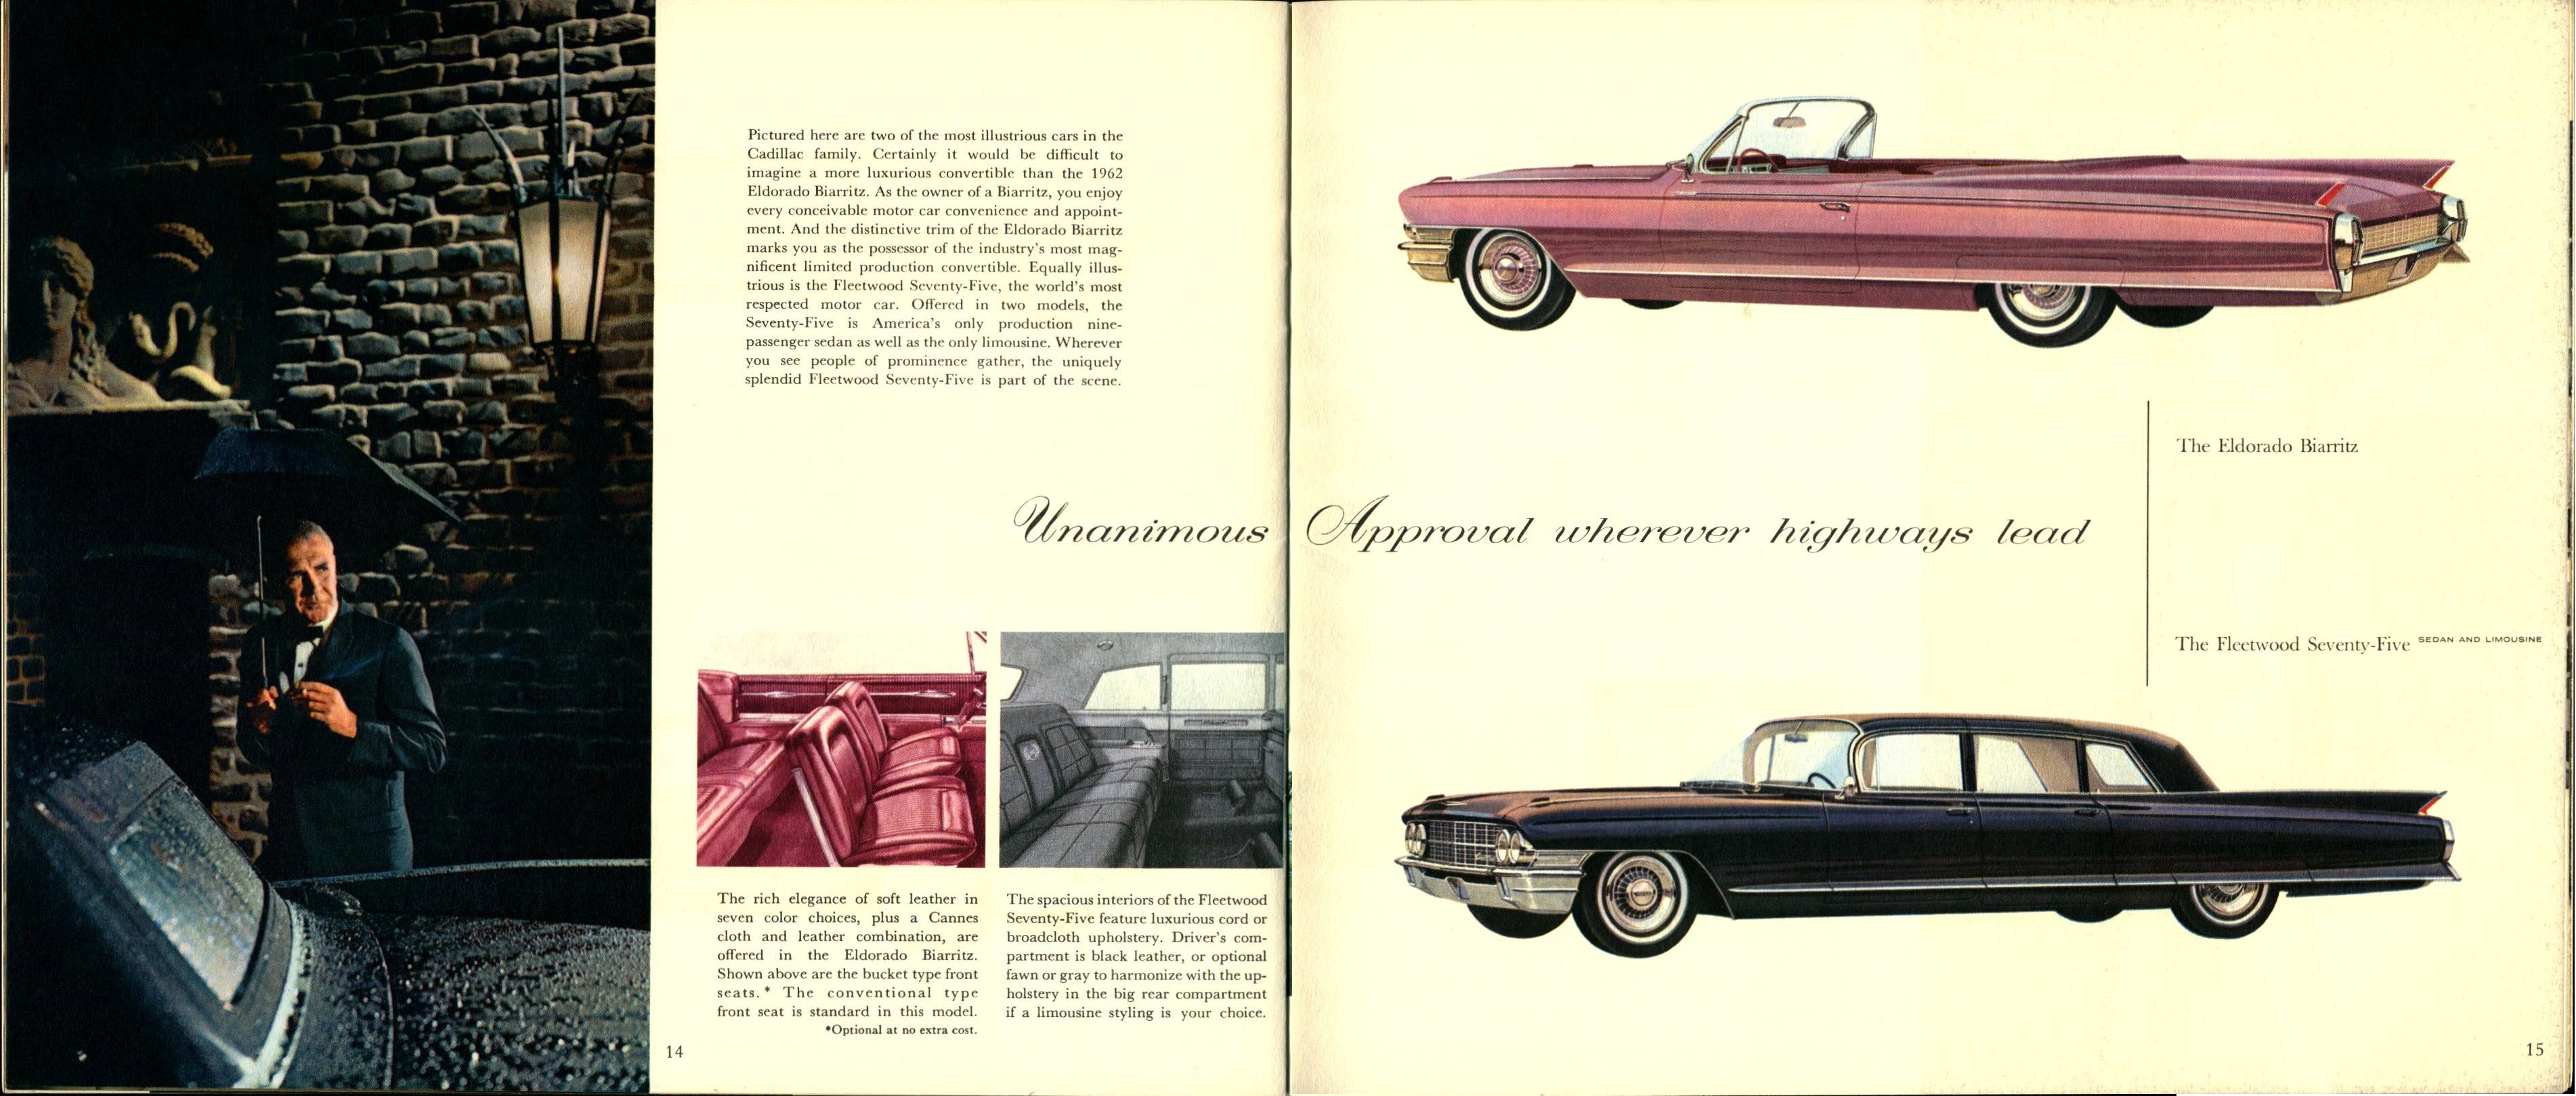 1962 Cadillac Brochure (Cdn)  14-15